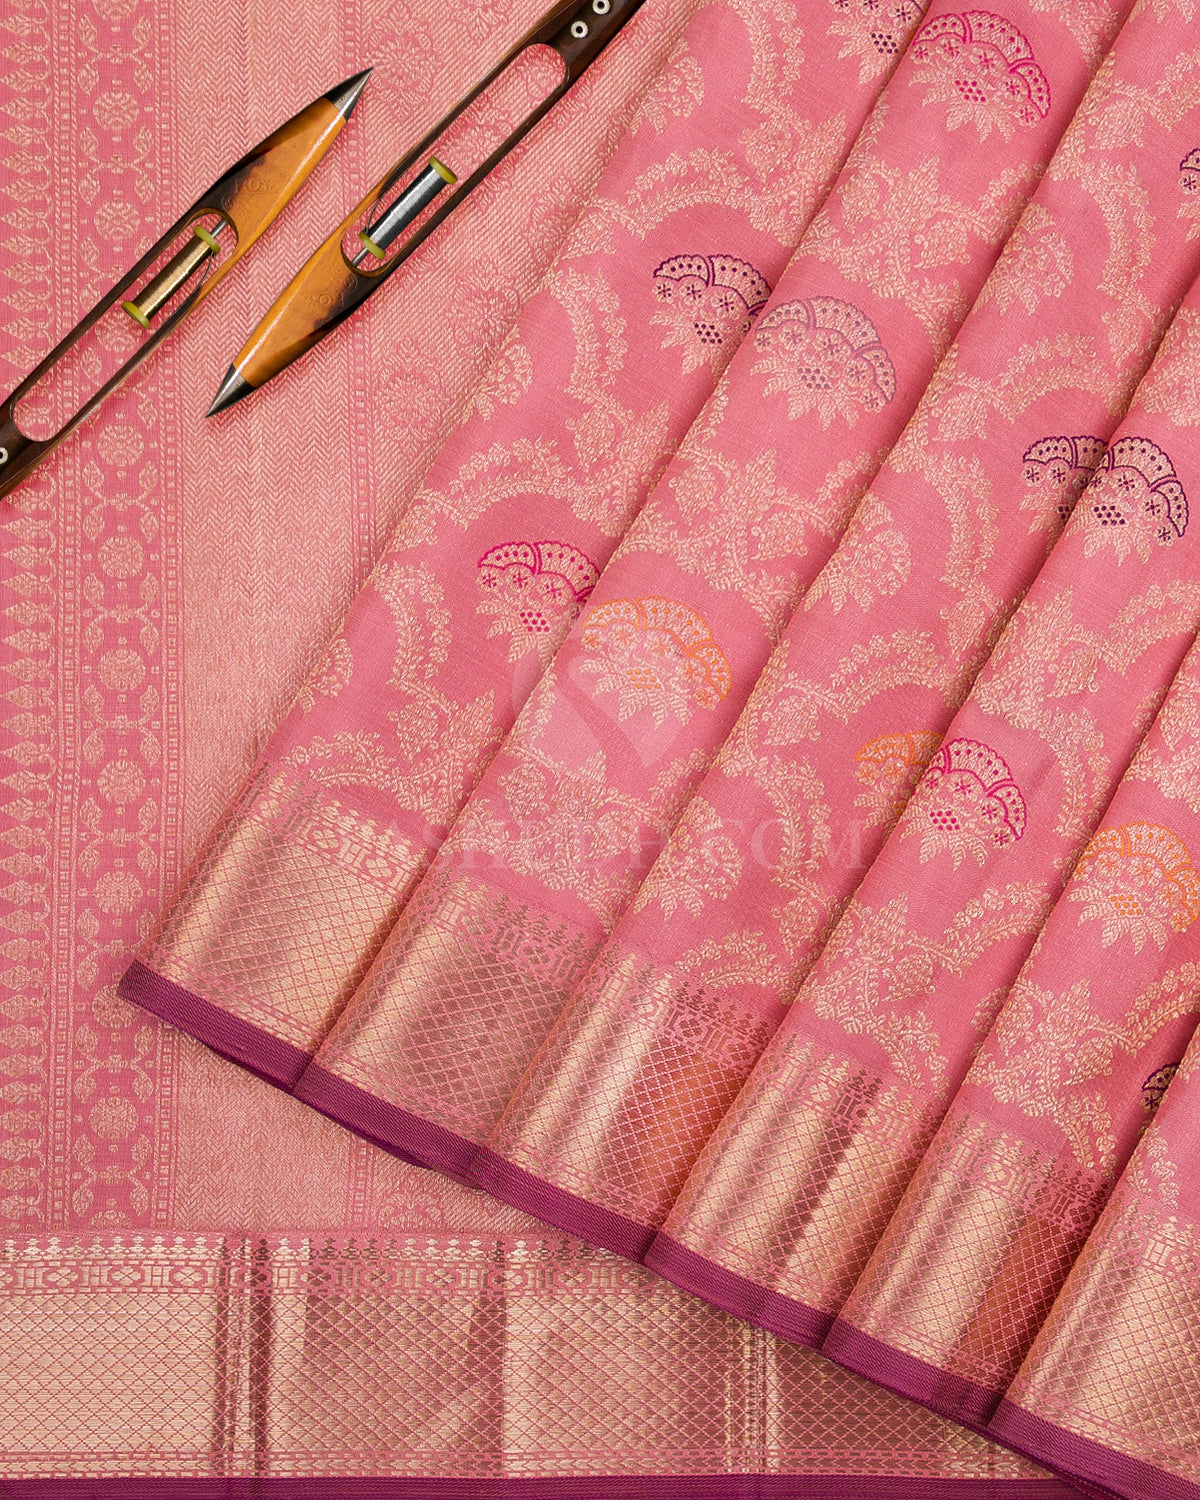 Peachy Pink Kanjivaram Silk Saree - S1023(C) - View 2